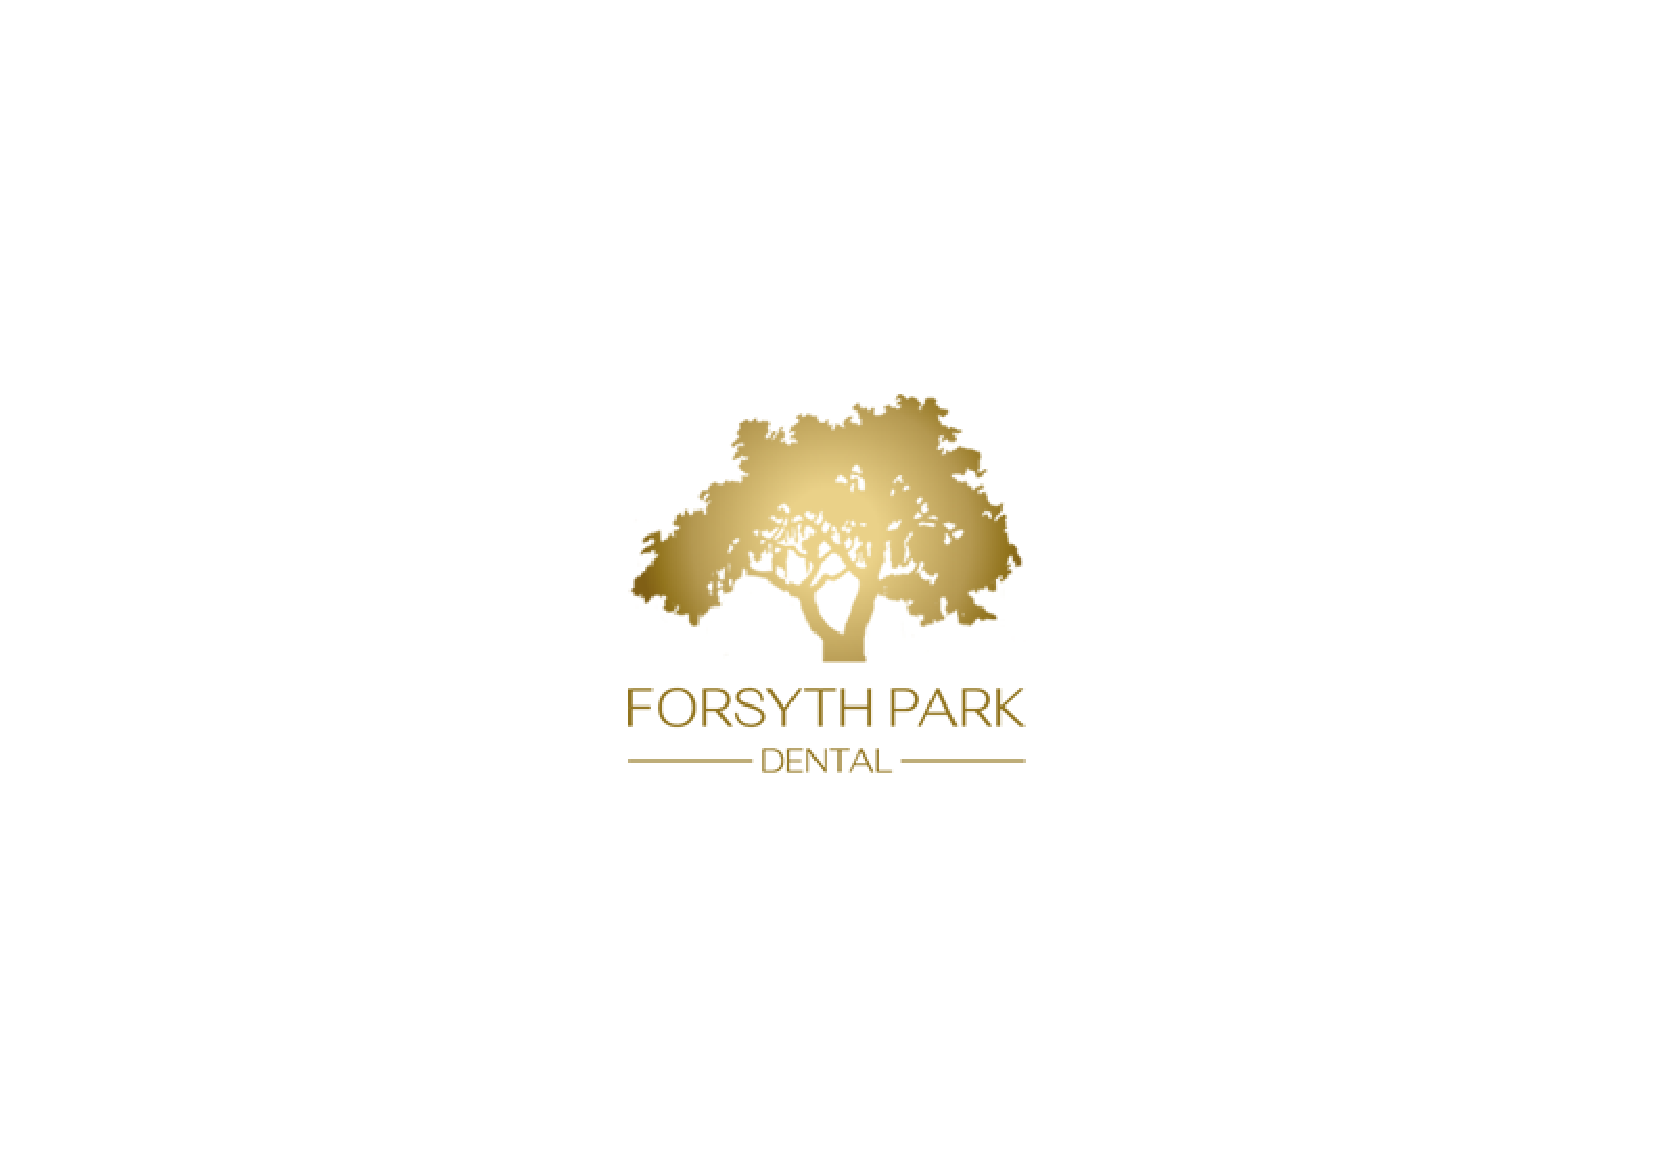 Forsyth Park Dental - Savannah